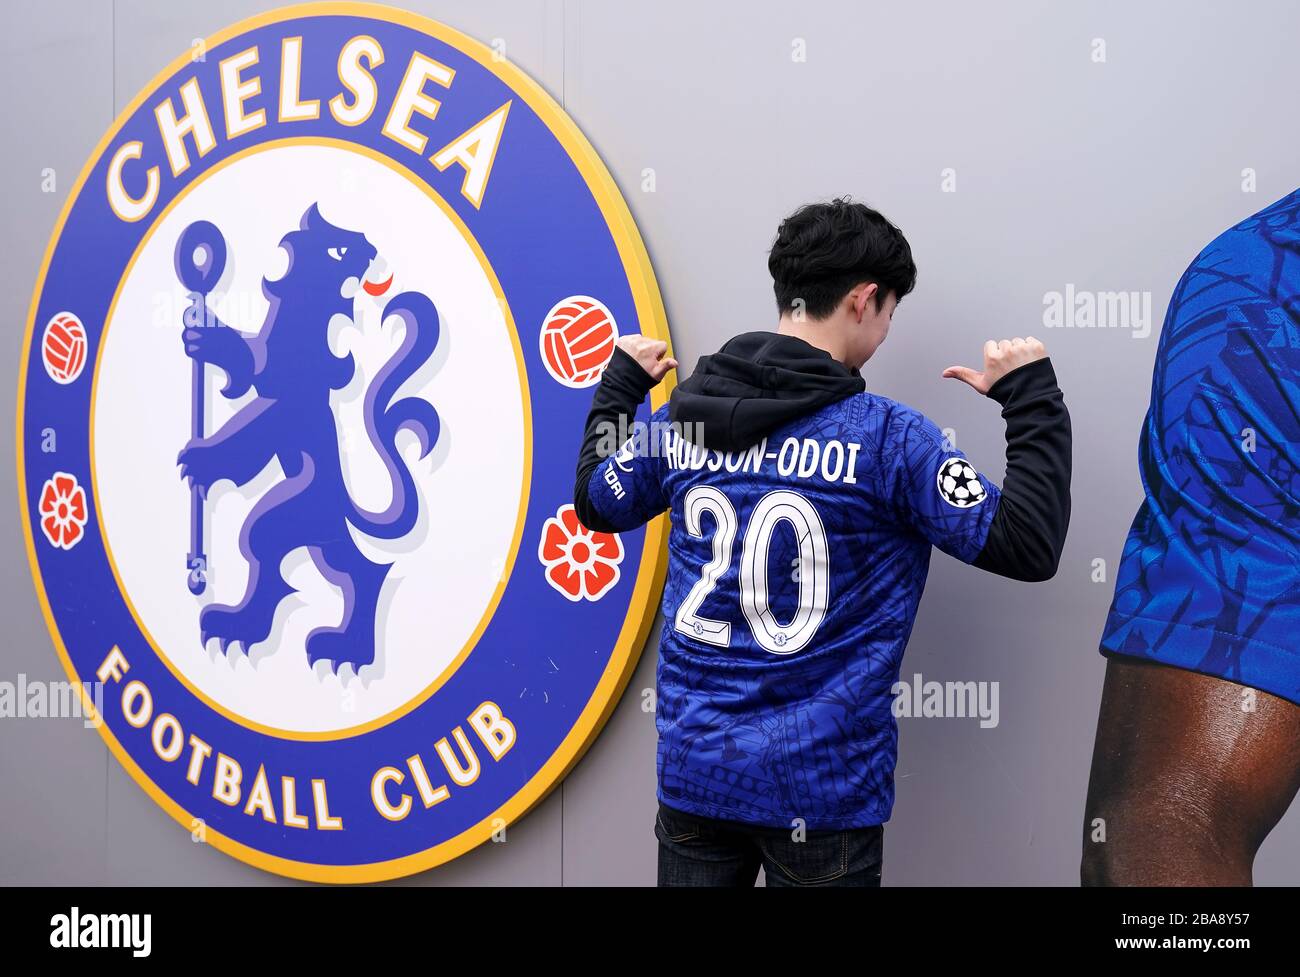 Un jeune fan pose devant l'écusson du club de football de Chelsea avec un maillot Callum Hudson-Odoi avant le match Banque D'Images